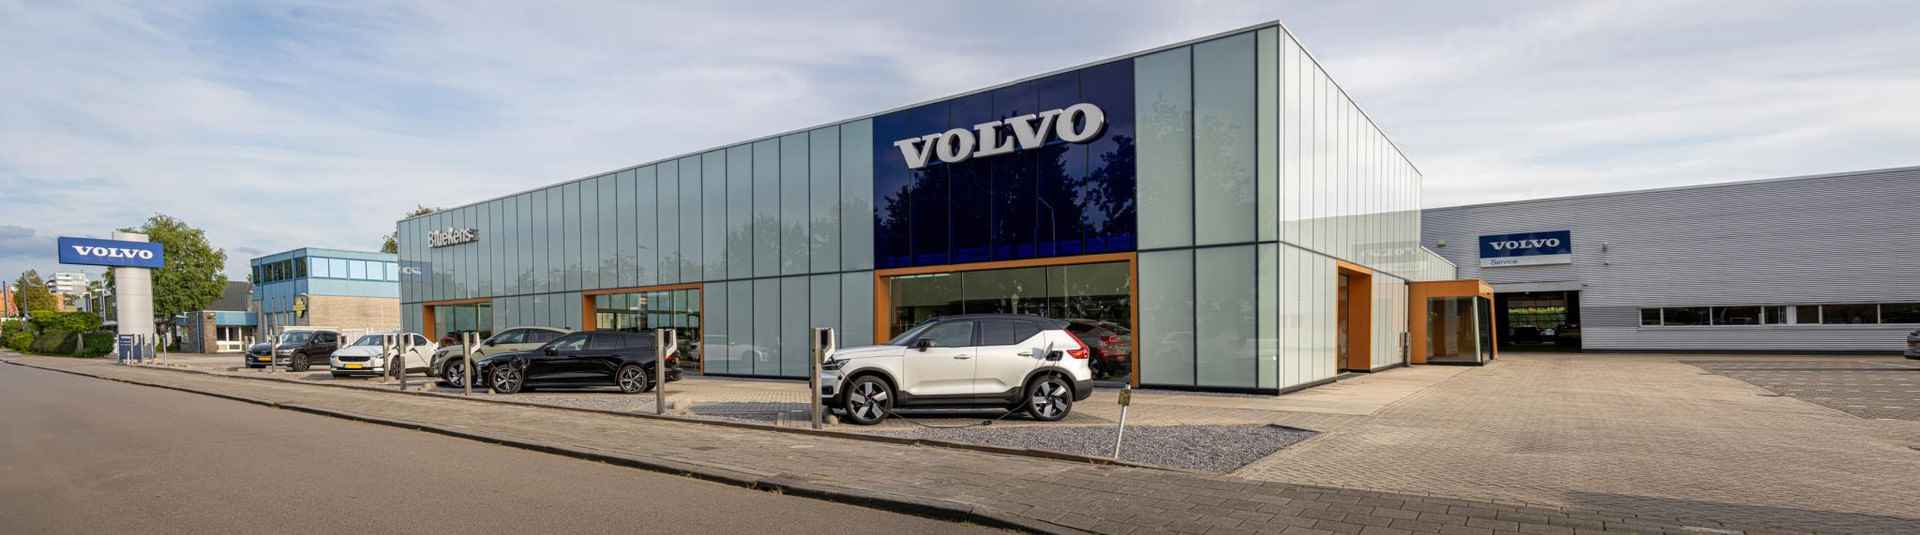 Volvo S90 T8 AWD Plus Bright - LONG RANGE - Panorama/schuifdak - IntelliSafe Assist & Surround - 360° Camera - Adaptieve LED koplampen - Verwarmde voorstoelen, stuur & achterbank - Parkeersensoren voor & achter - Elektr. bedienb. voorstoelen met geheugen - Extra getint glas - Elektr. inklapbare trekhaak - 19' LMV - 27/27